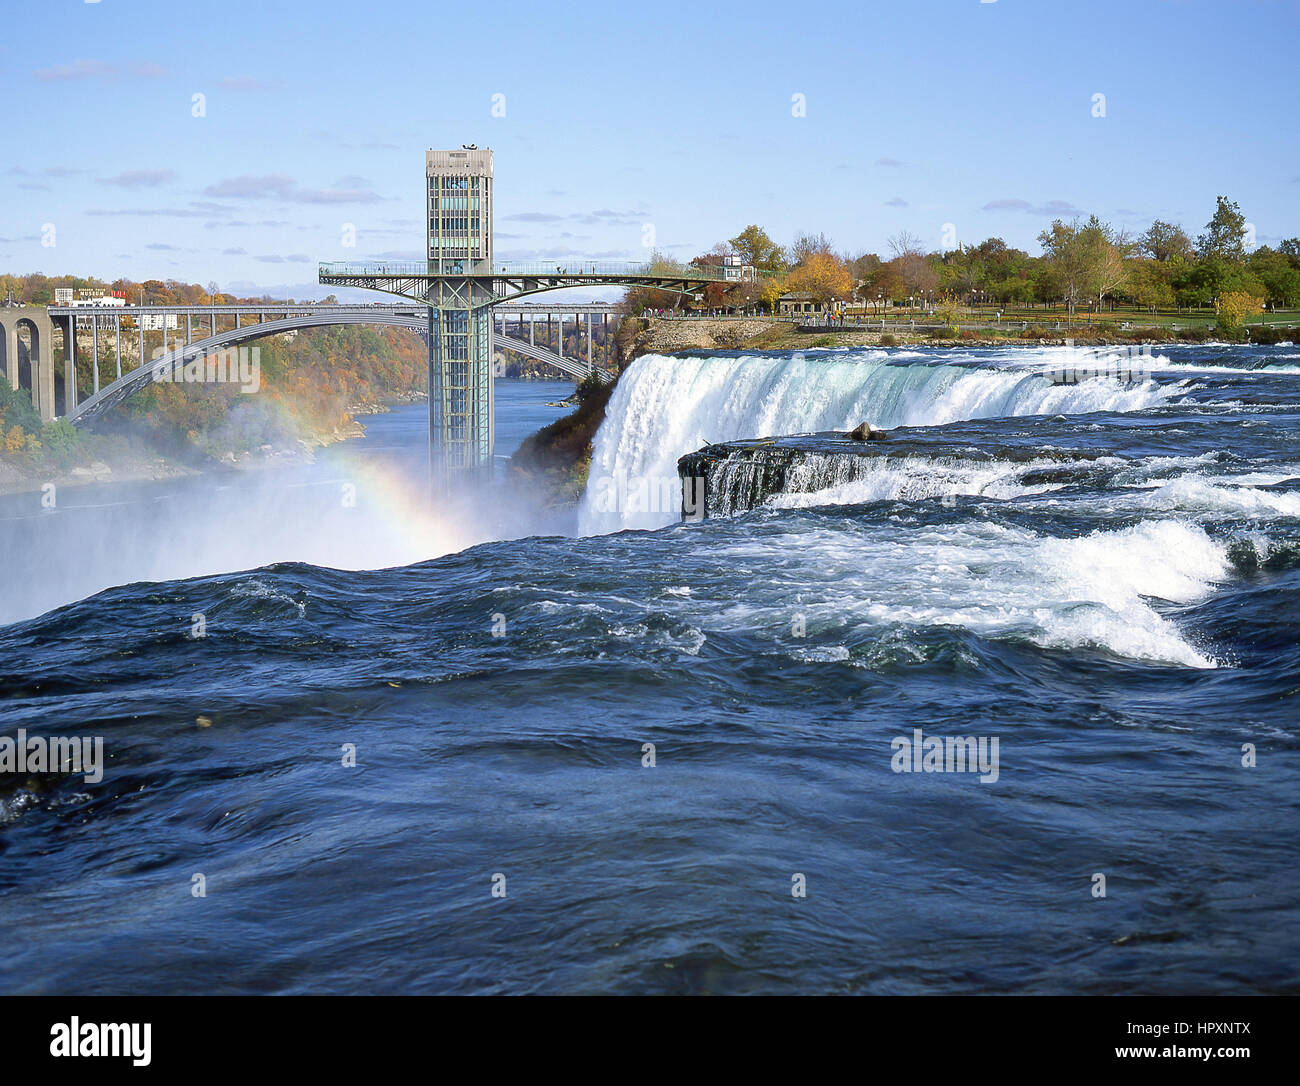 Americani e Bridal Veil Falls, Niagara Falls, nello Stato di New York, Stati Uniti d'America Foto Stock